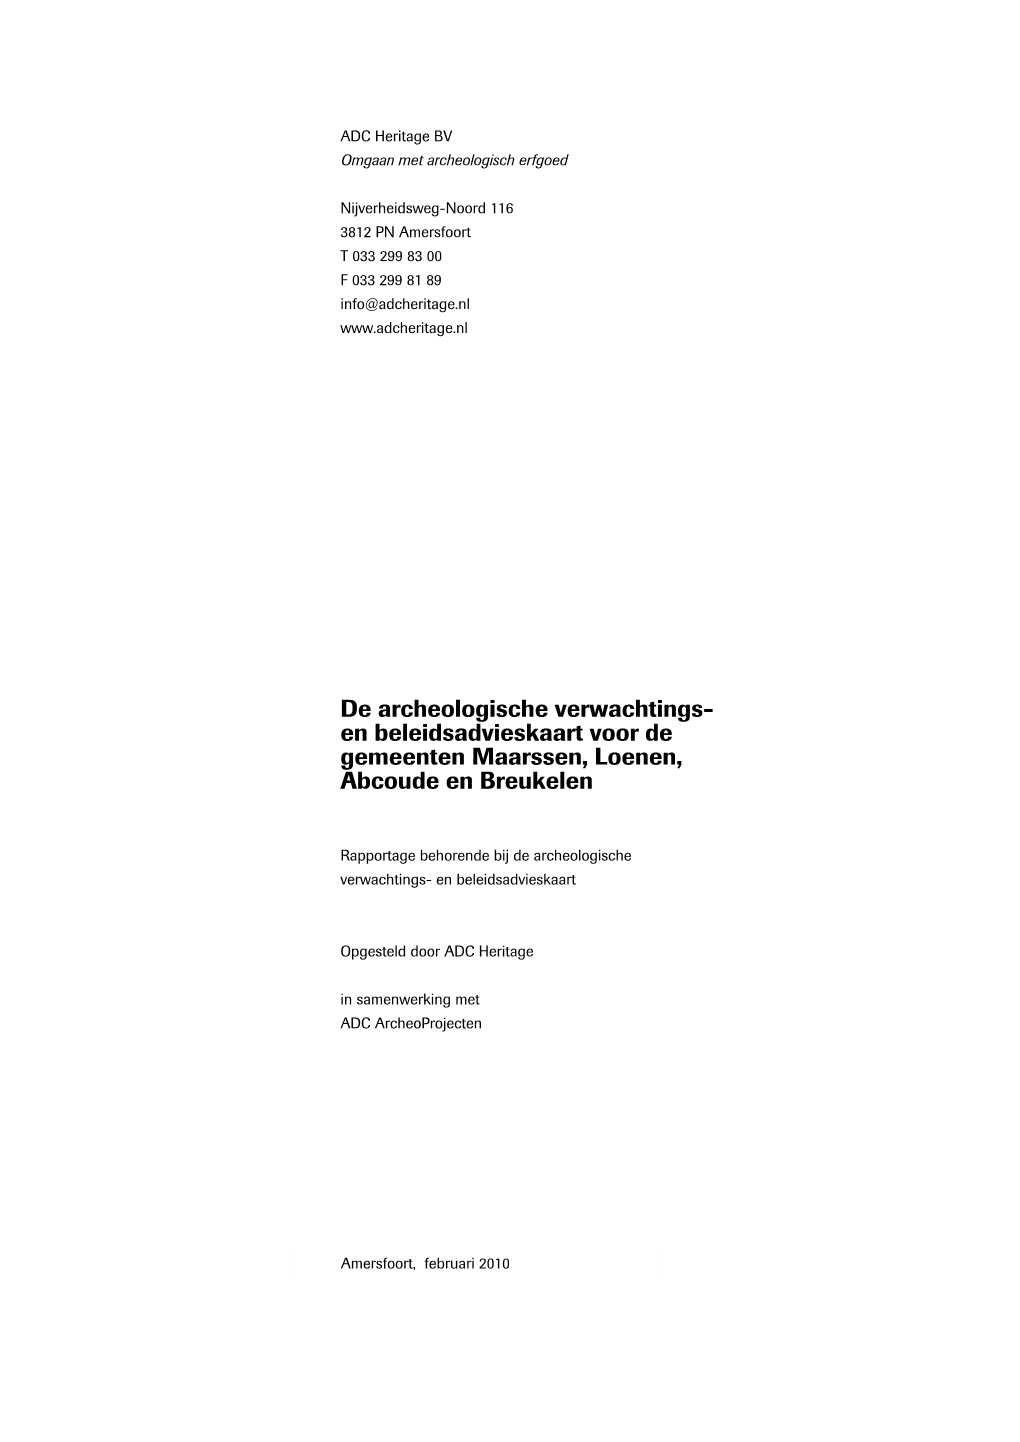 De Archeologische Verwachtings- En Beleidsadvieskaart Voor De Gemeenten Maarssen, Loenen, Abcoude En Breukelen